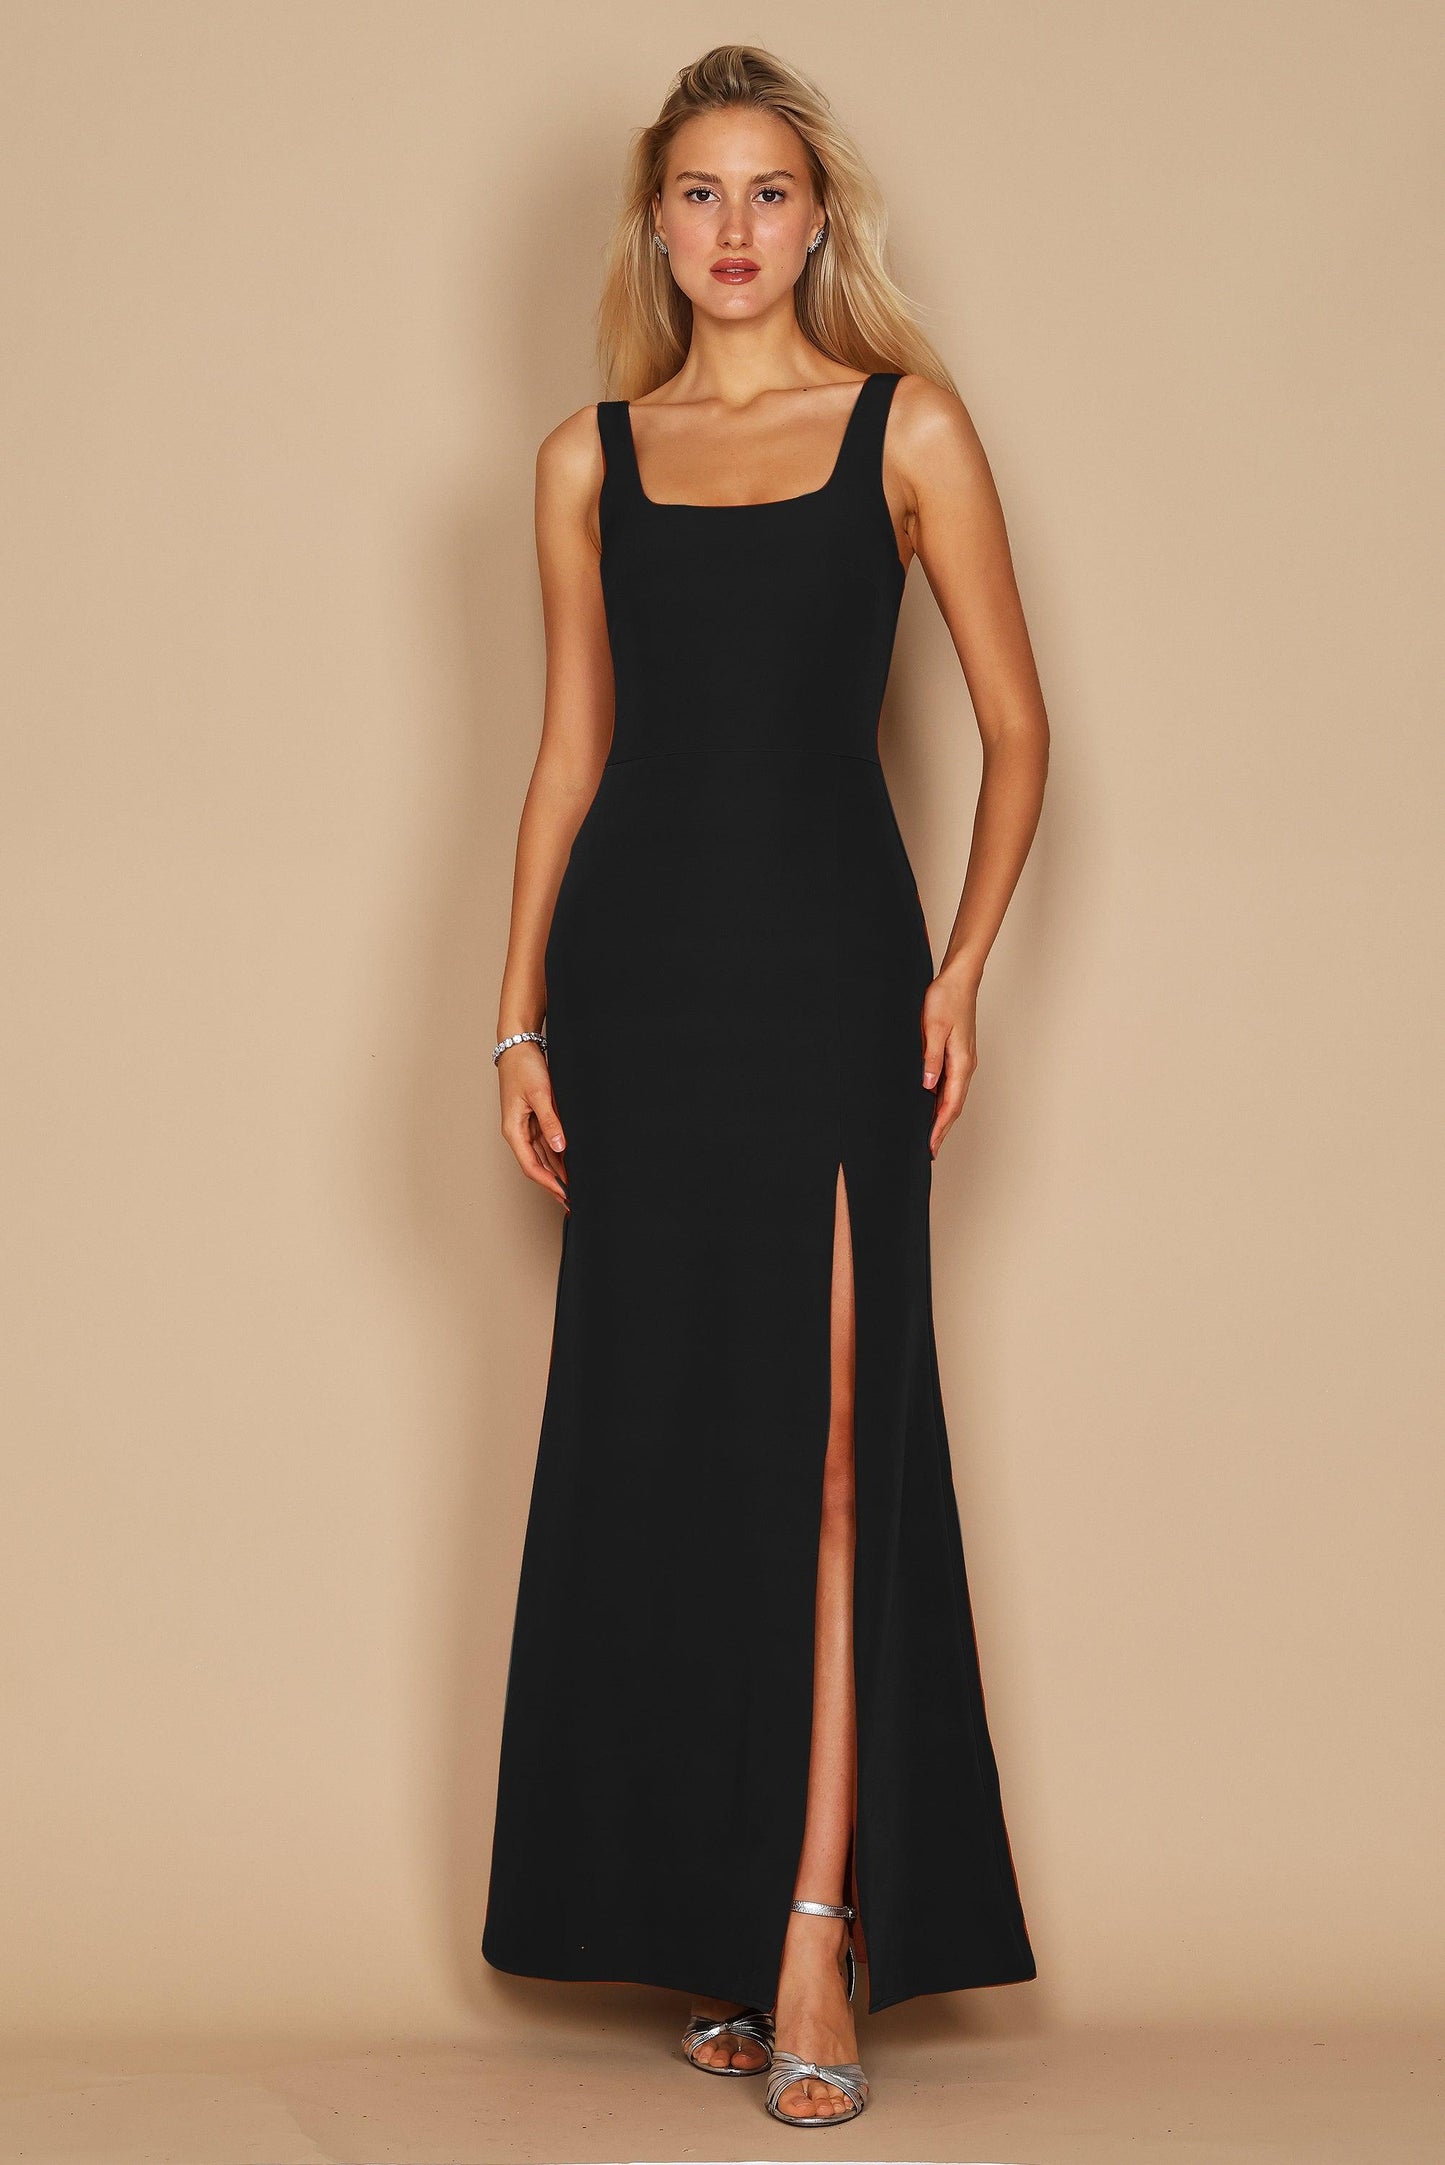 Formal Dresses Long Formal Square Neckline Evening Dress Black